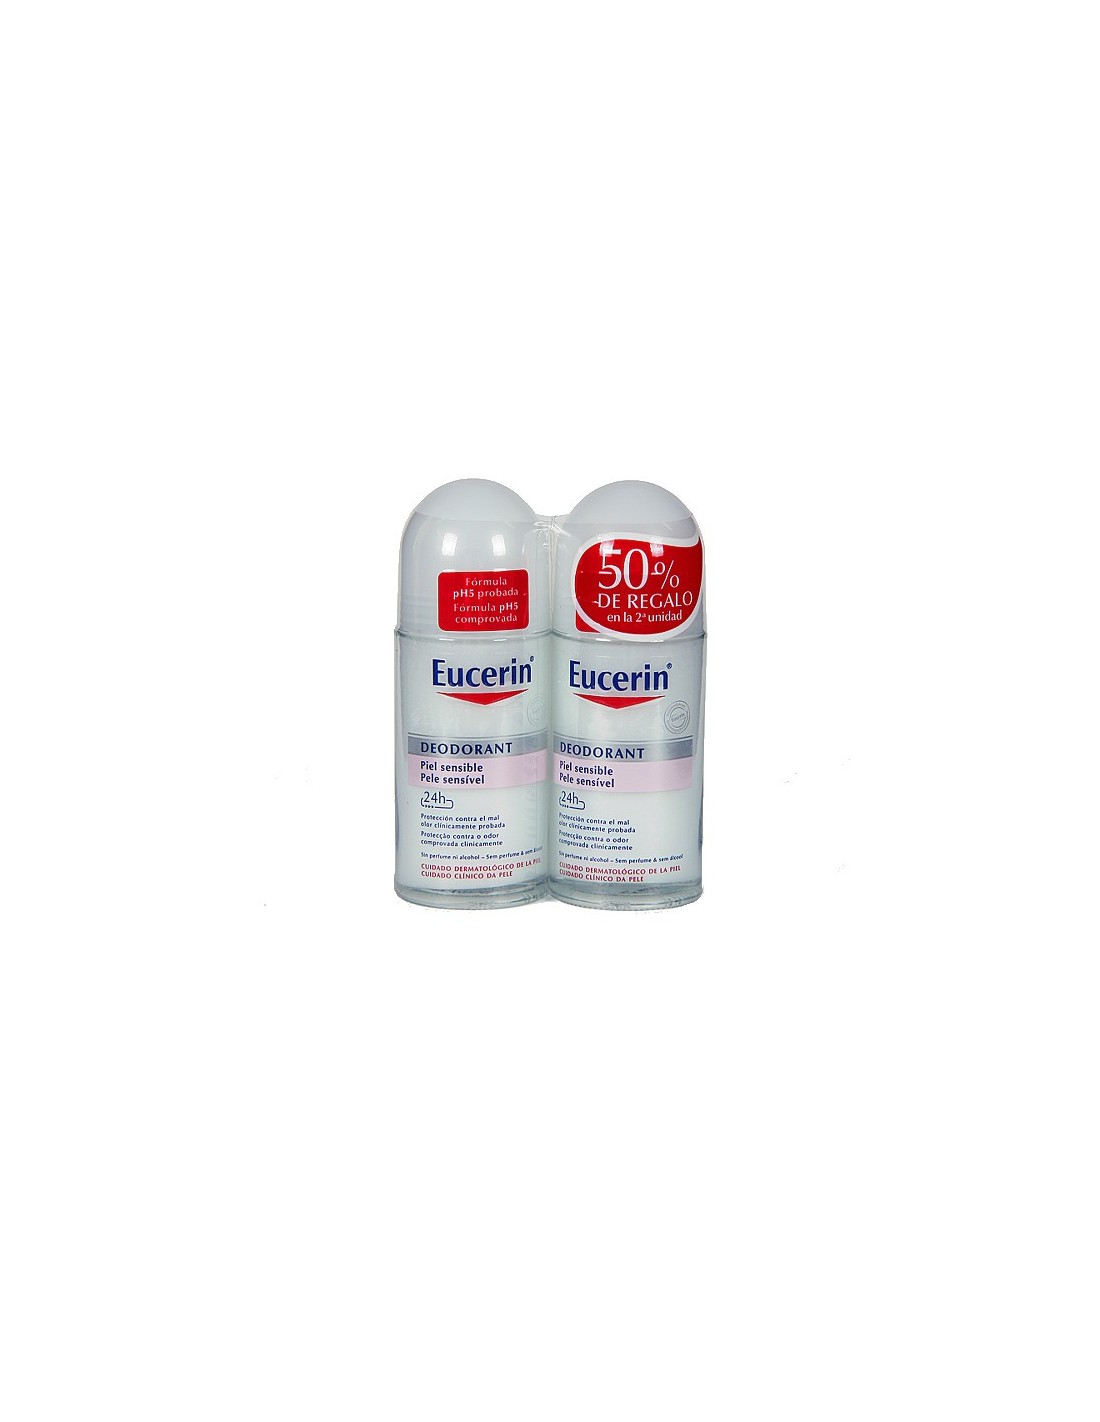 Eucerin Duplo Desodorante Piel Sensible 50ml+50ml